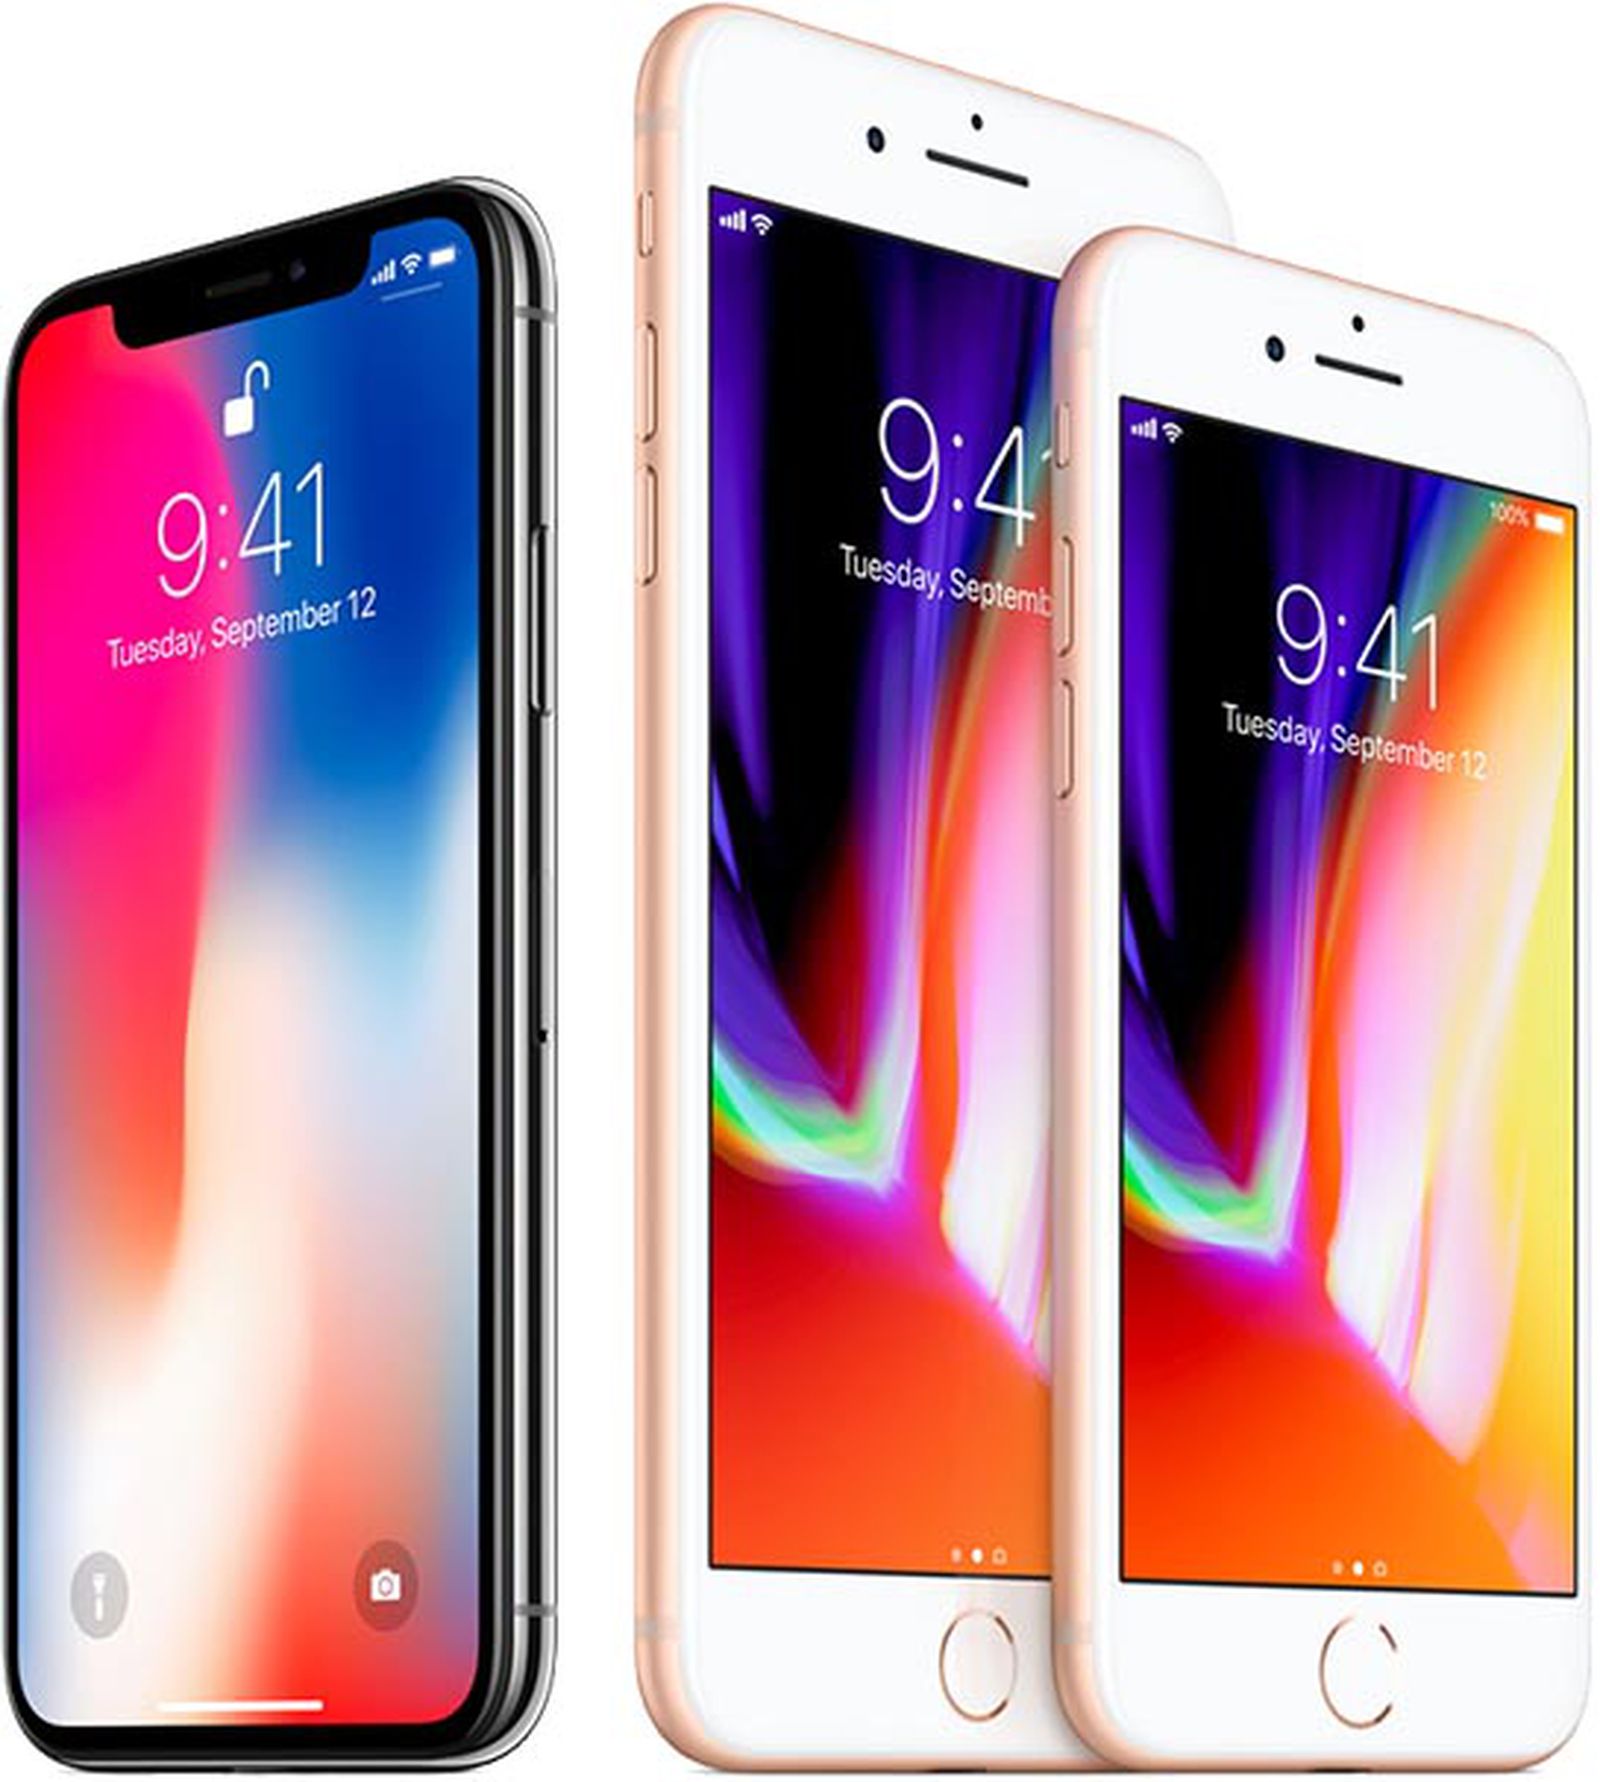 売り価格 iPhone X×2、8、7 スマートフォン本体